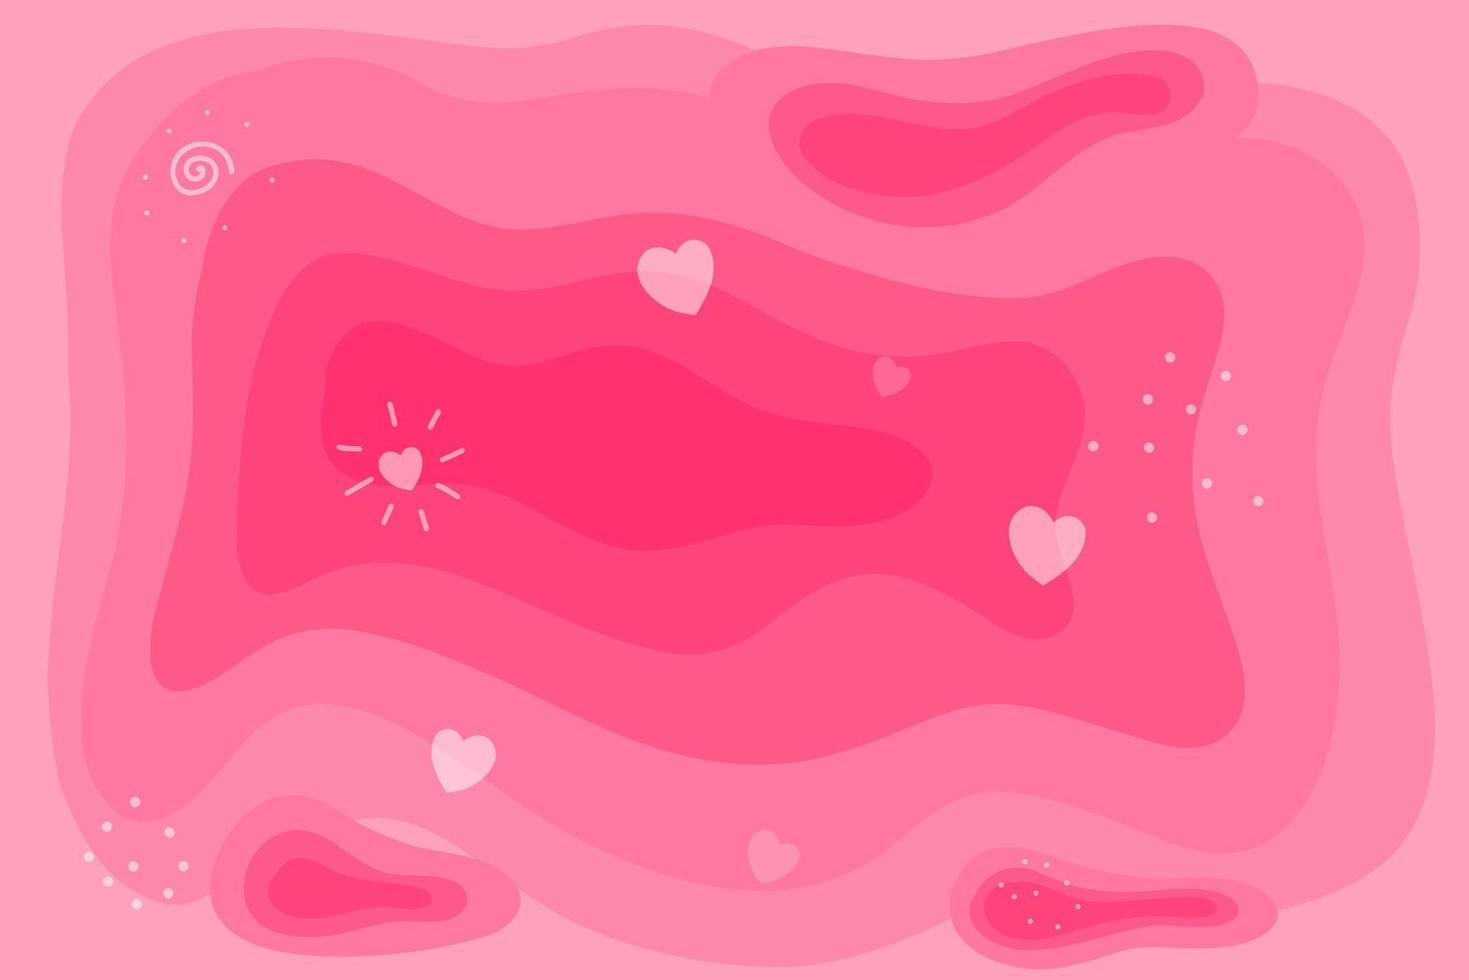 abstrakter hintergrund rosa und liebesthema für banner und social media post vektor